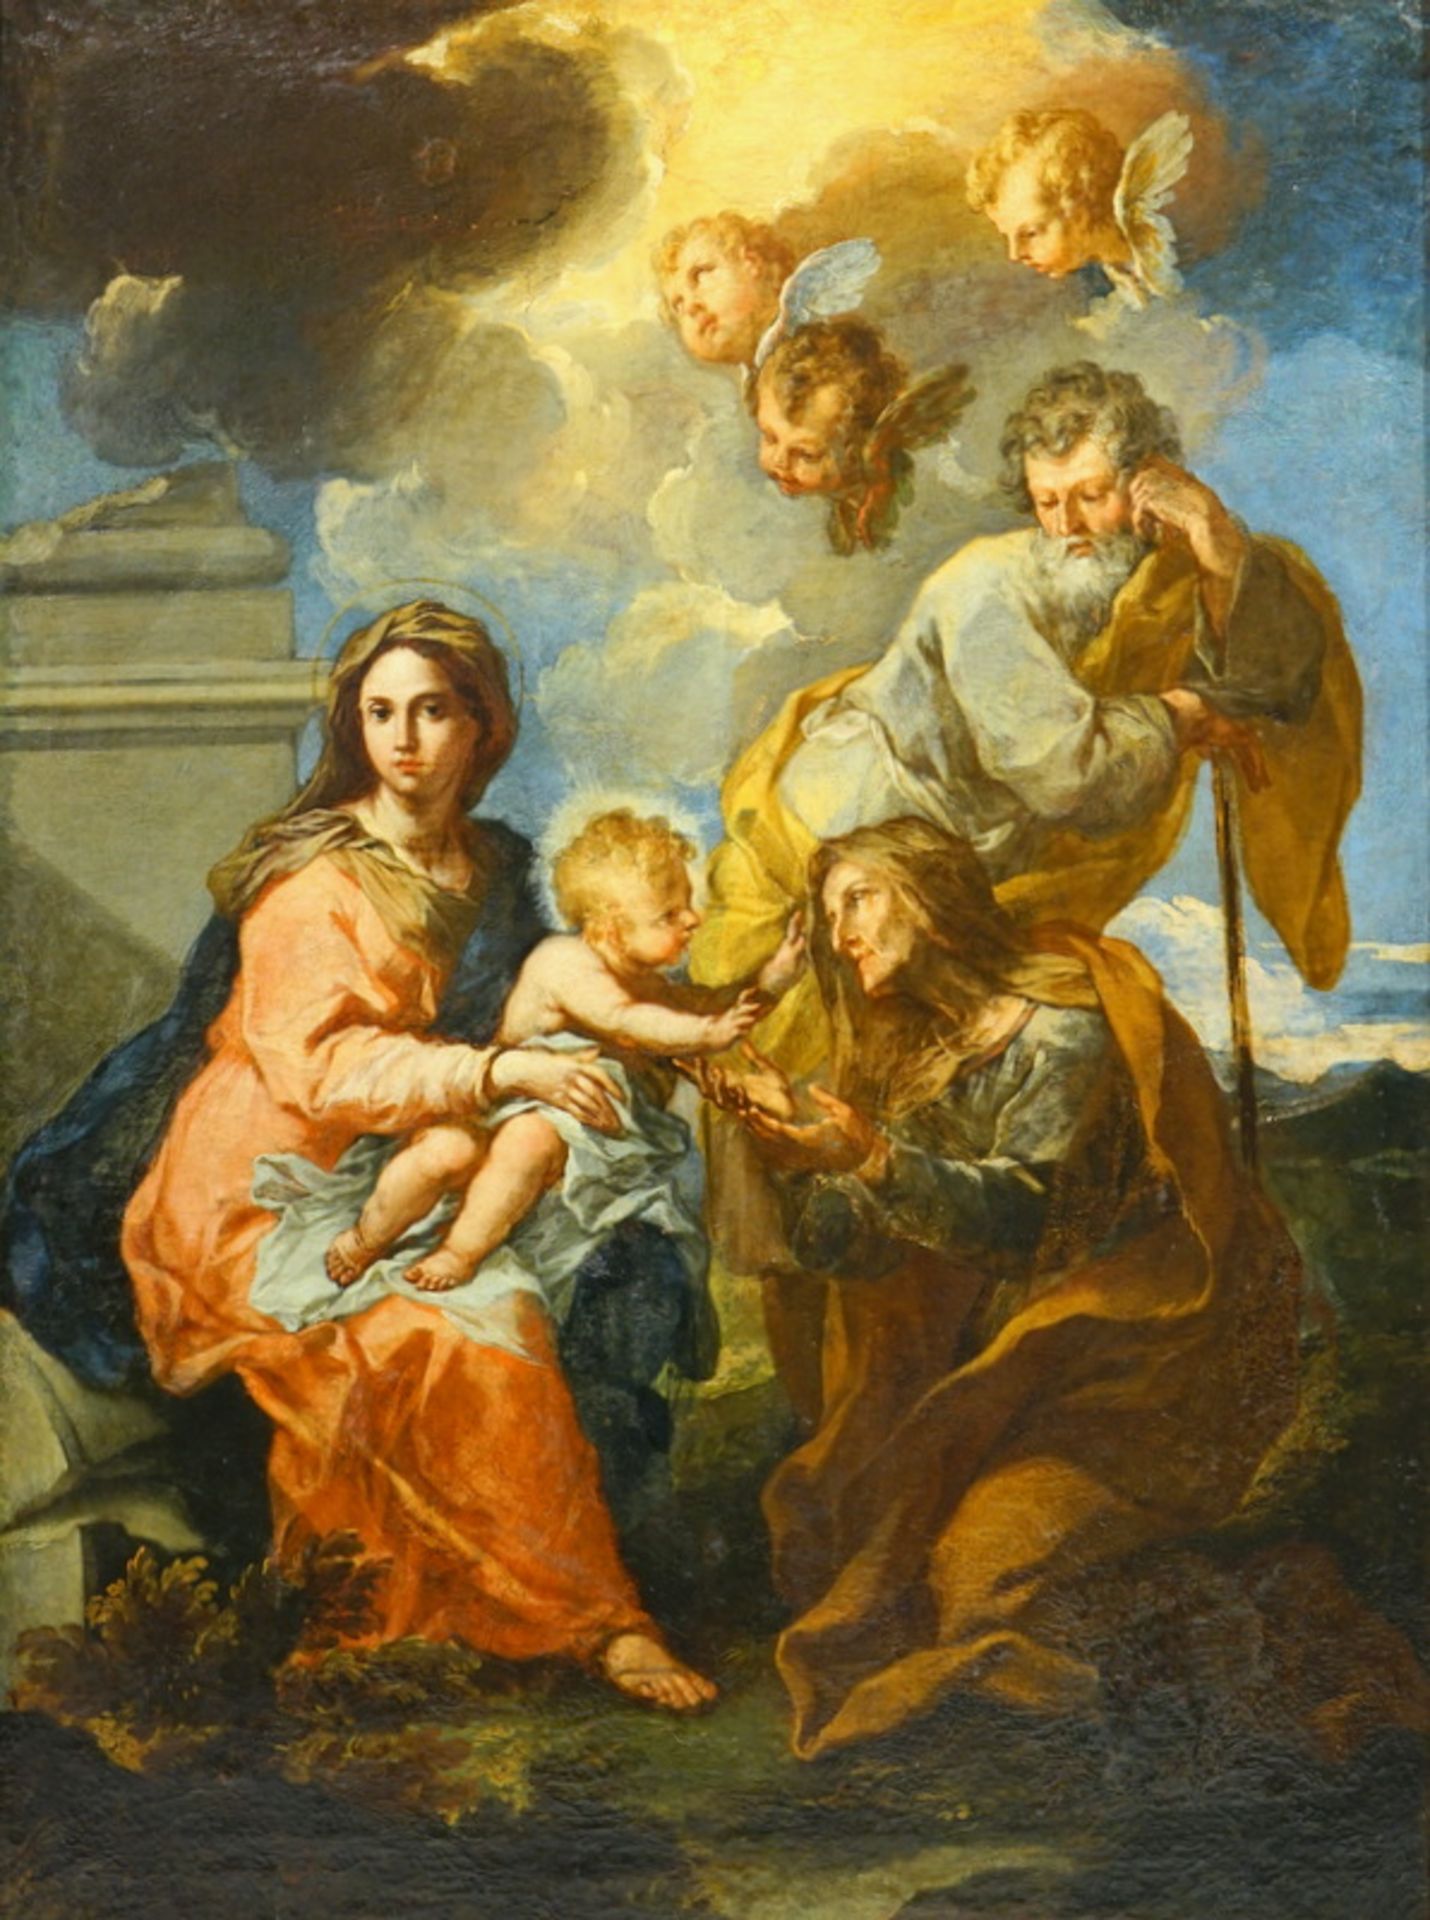 Diziani, Gaspare ((Belluno 1689 – Venedig 1767): Heilige Familie mit Elisabeth,nach seinen